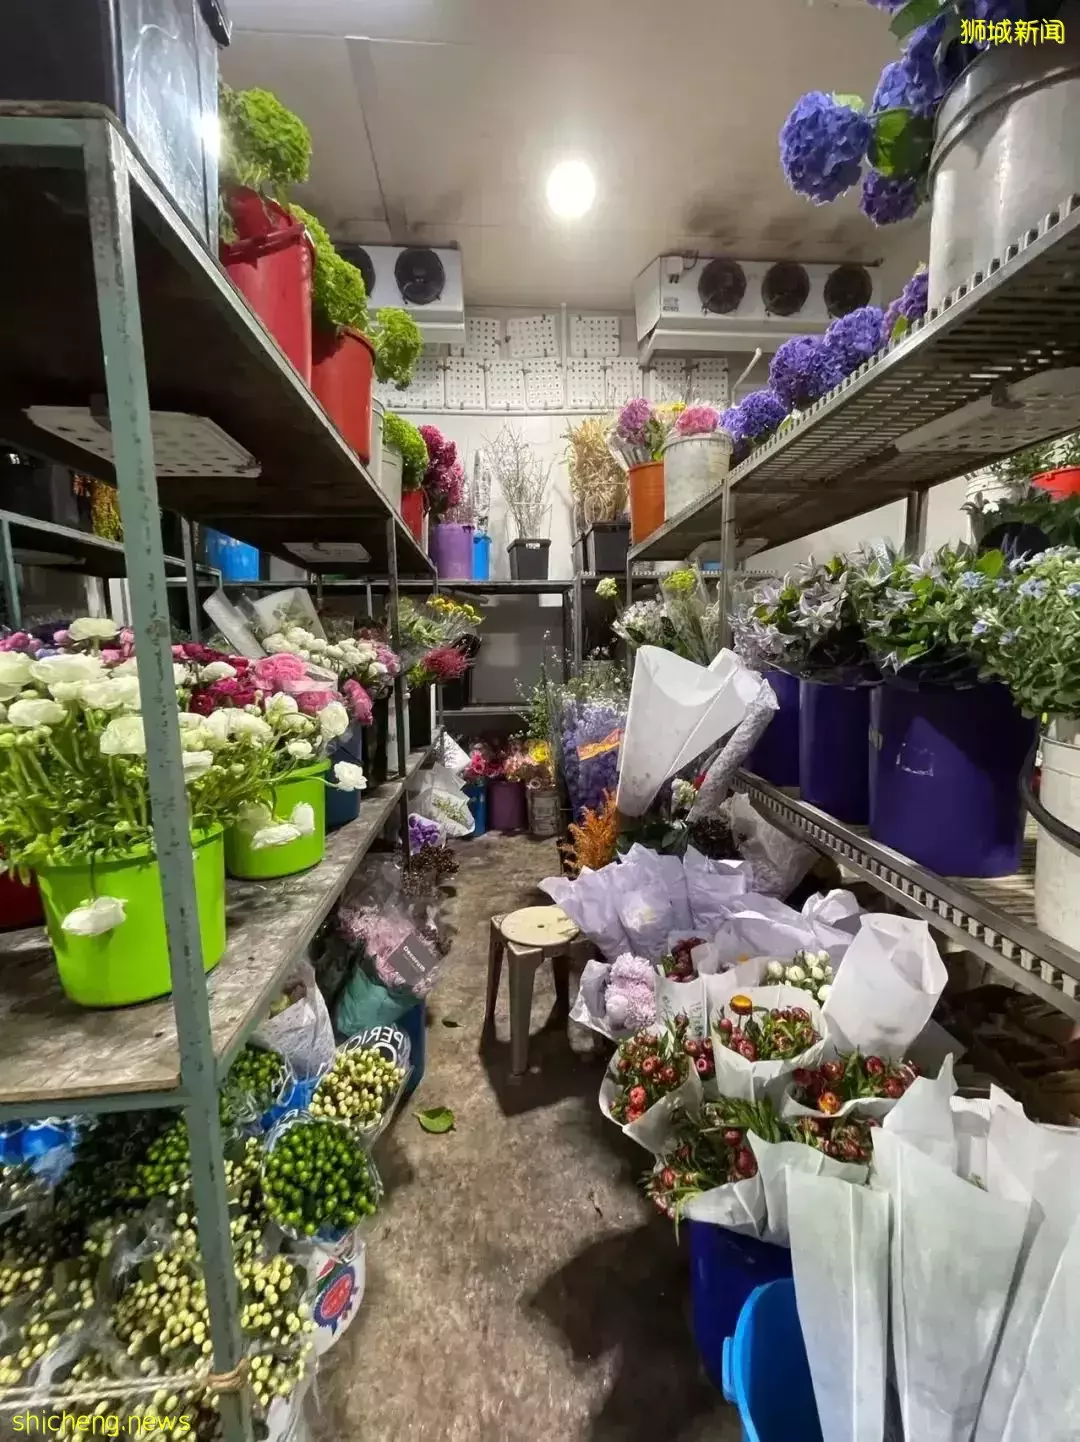 鲜花在热带也能养1个月？资深花友新加坡买花、养护大揭秘